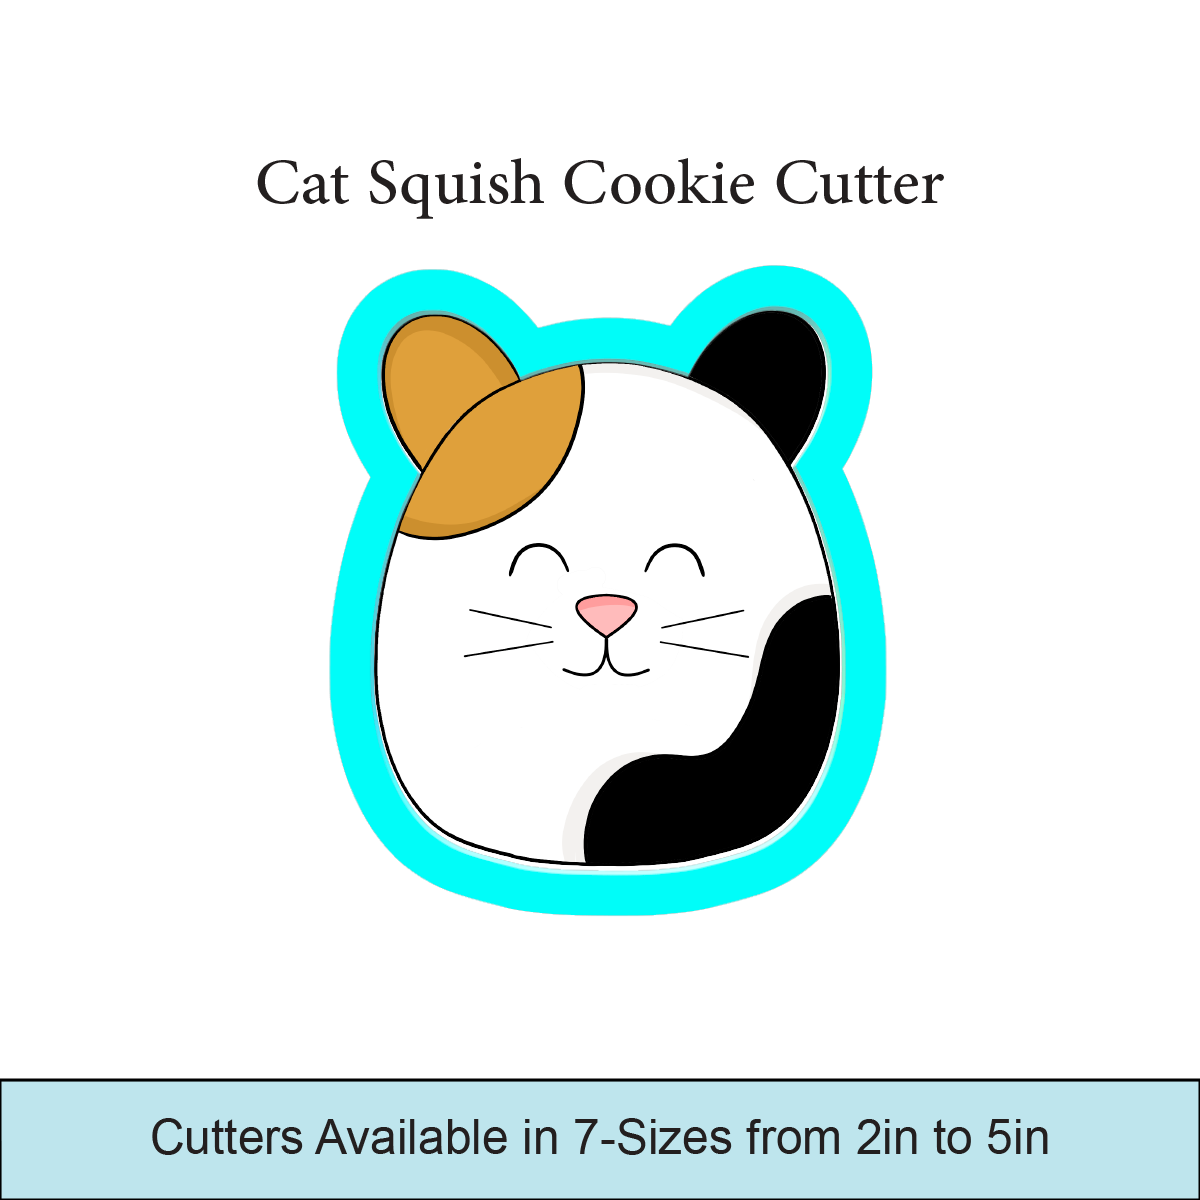 Cat Squish Cookie Cutters